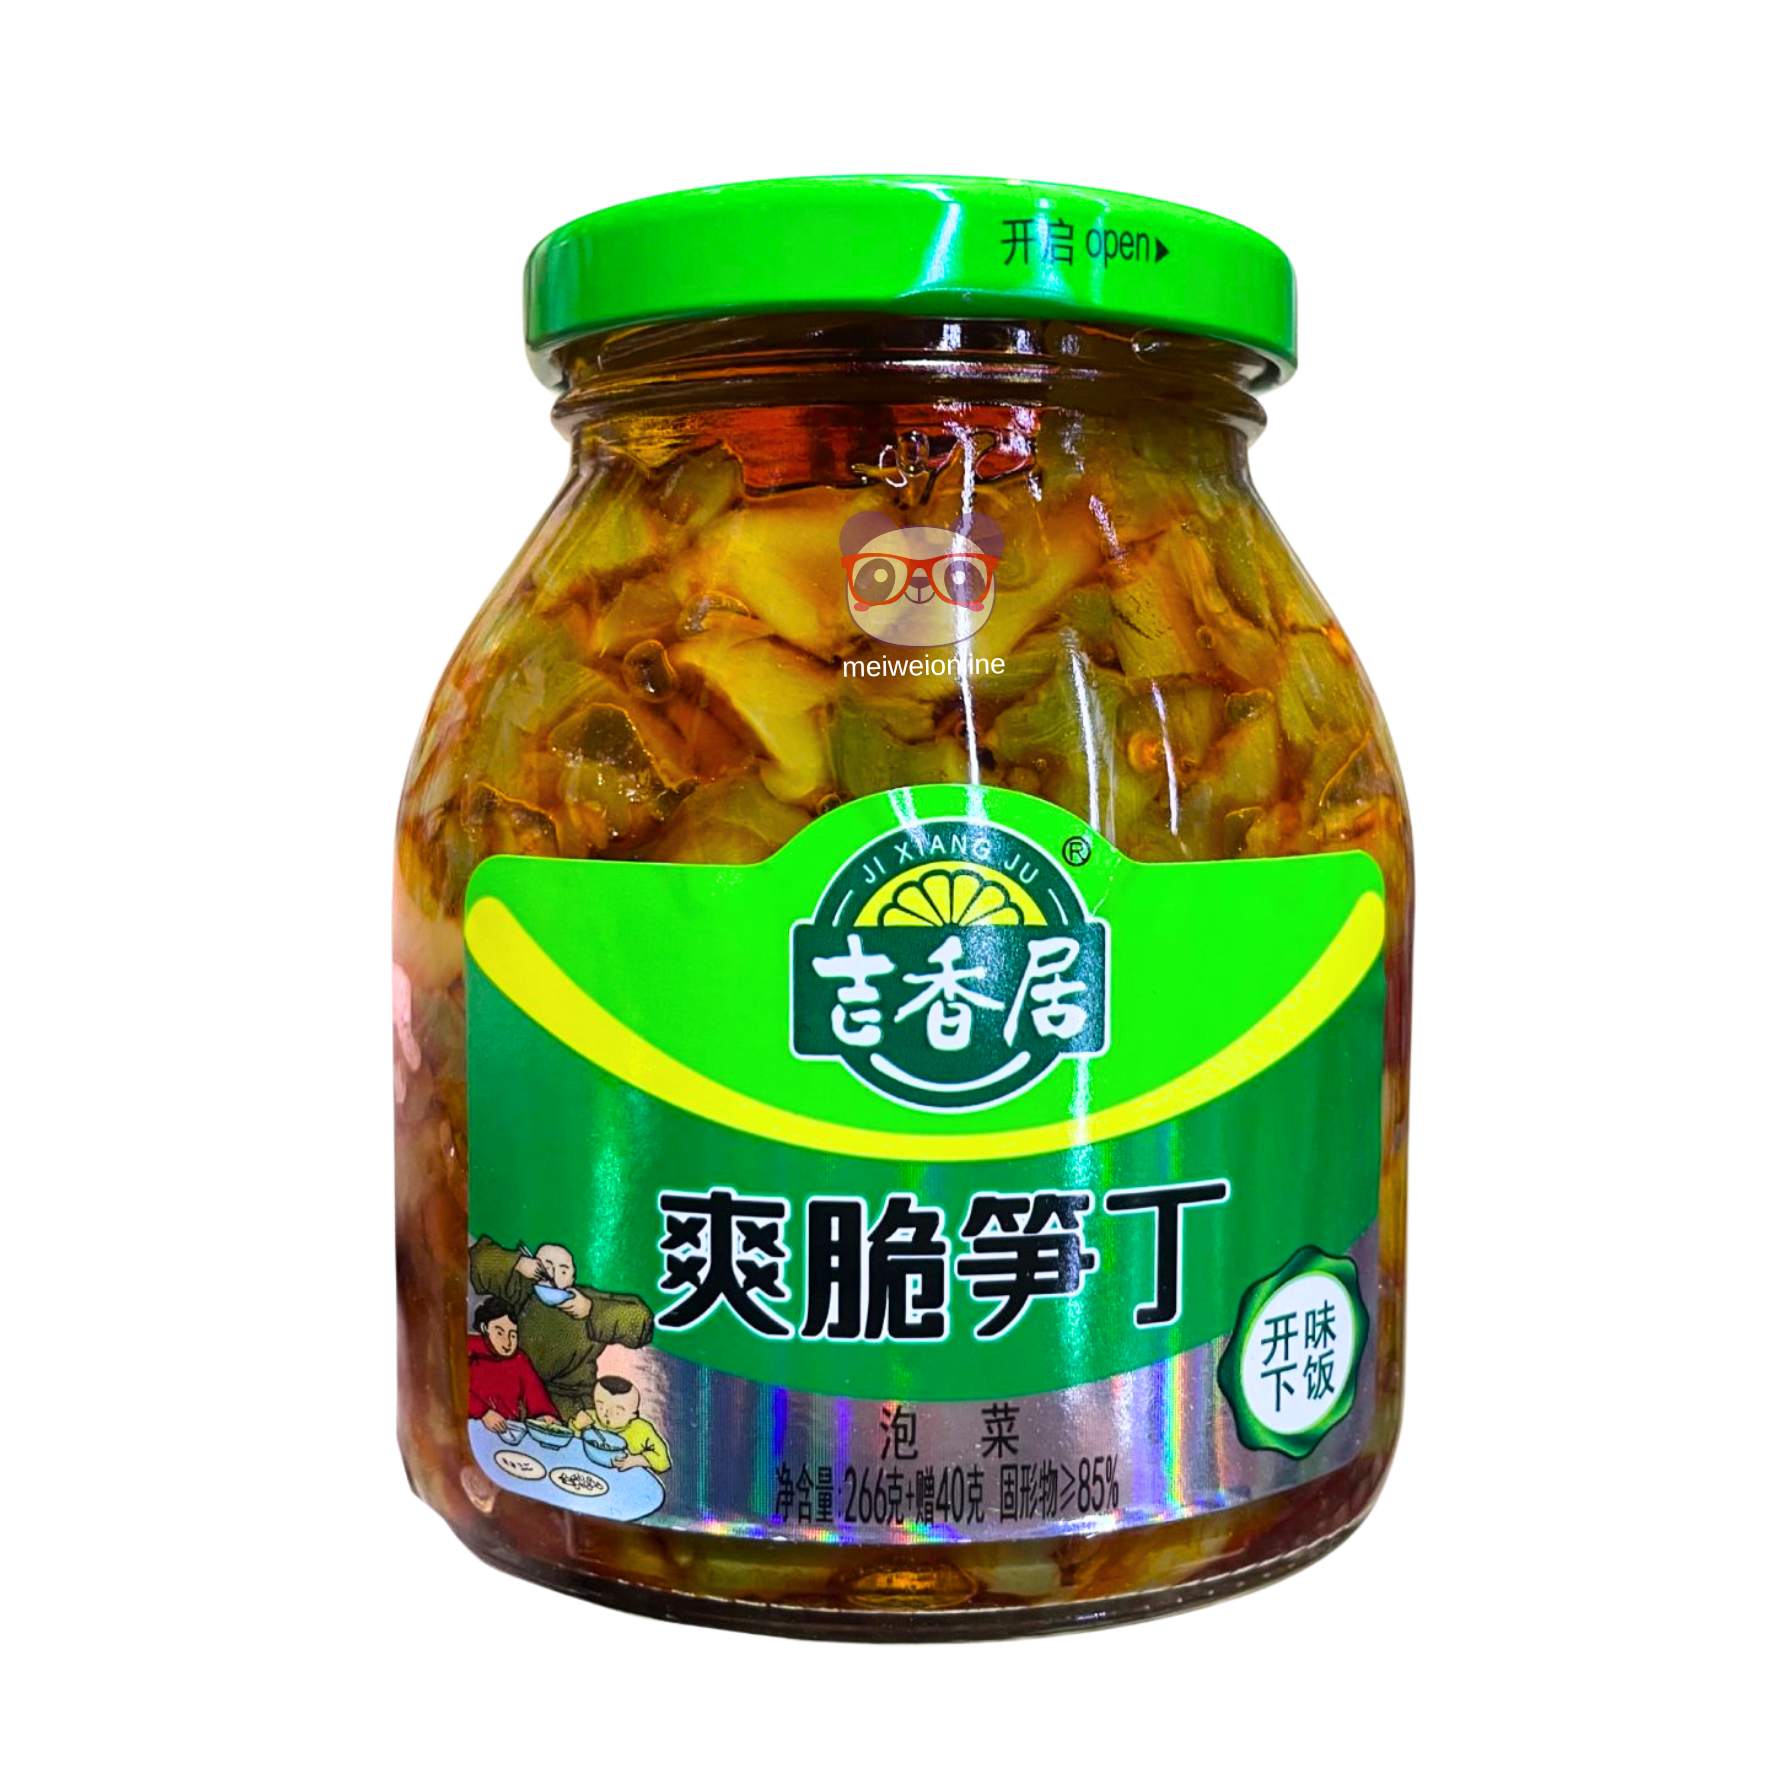 Alface aspargo fatiado temperado - Jixiangju 306g